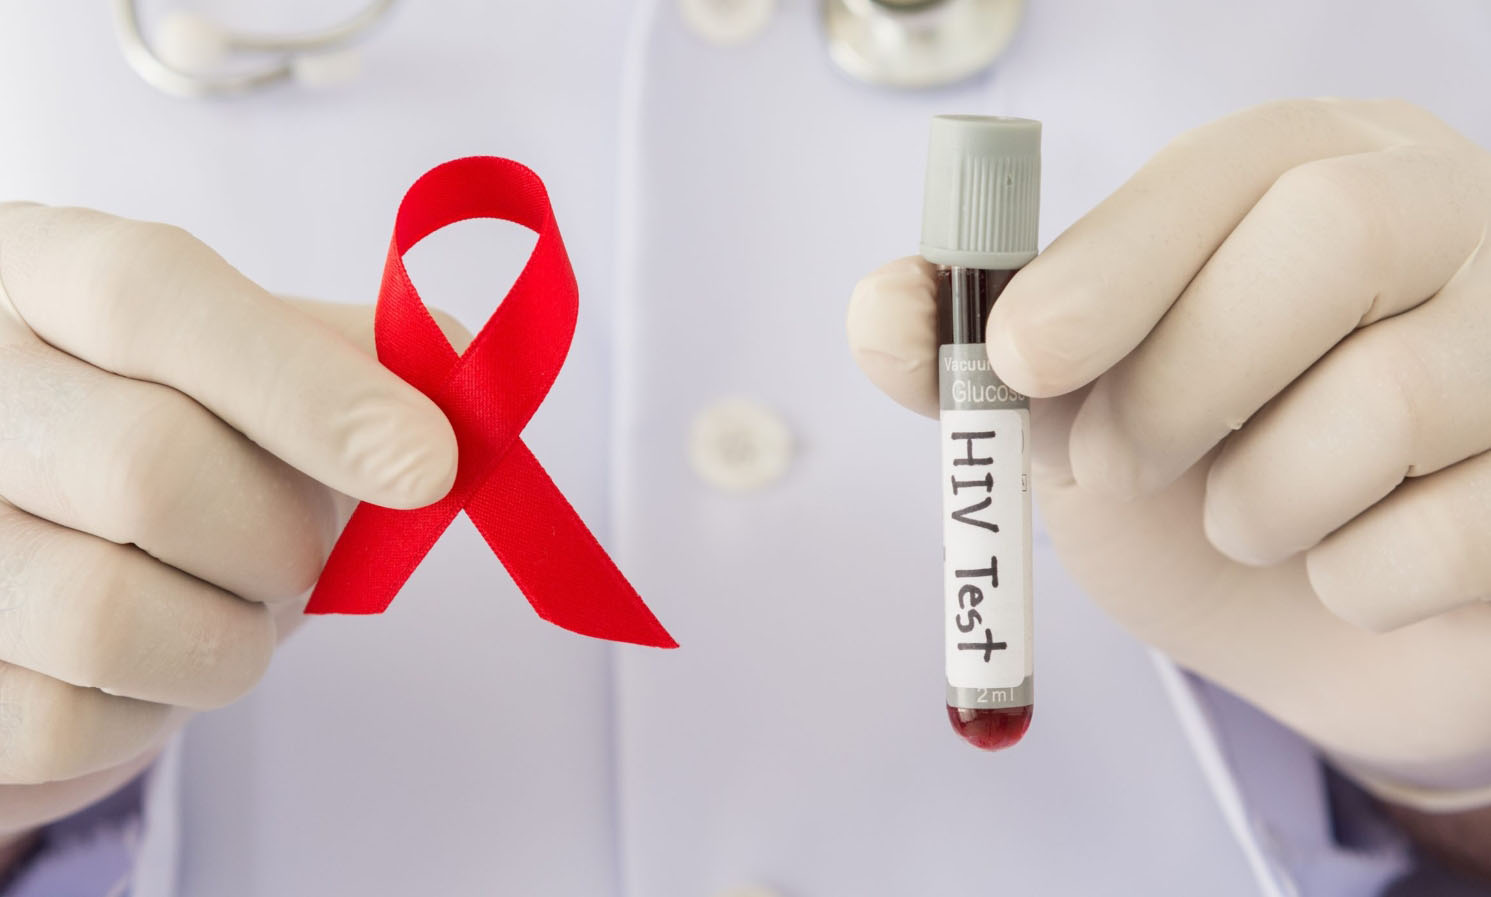 Ответы к тестам НМО: "ВИЧ-инфекция у взрослых: лечение (по утвержденным клиническим рекомендациям)"